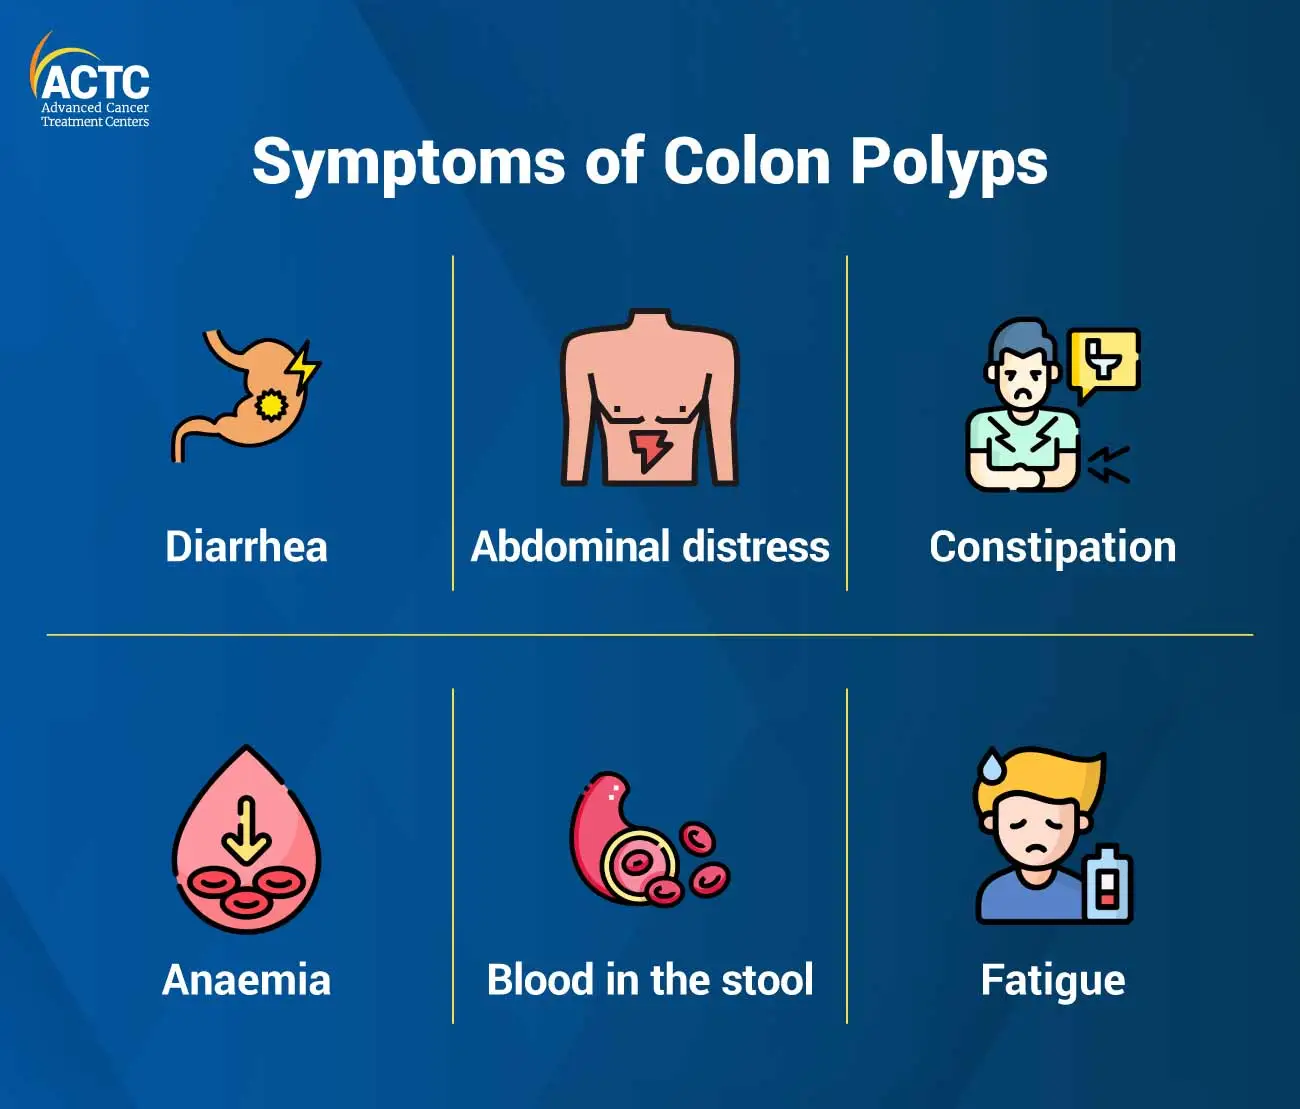 Symptoms of Colon Polyps